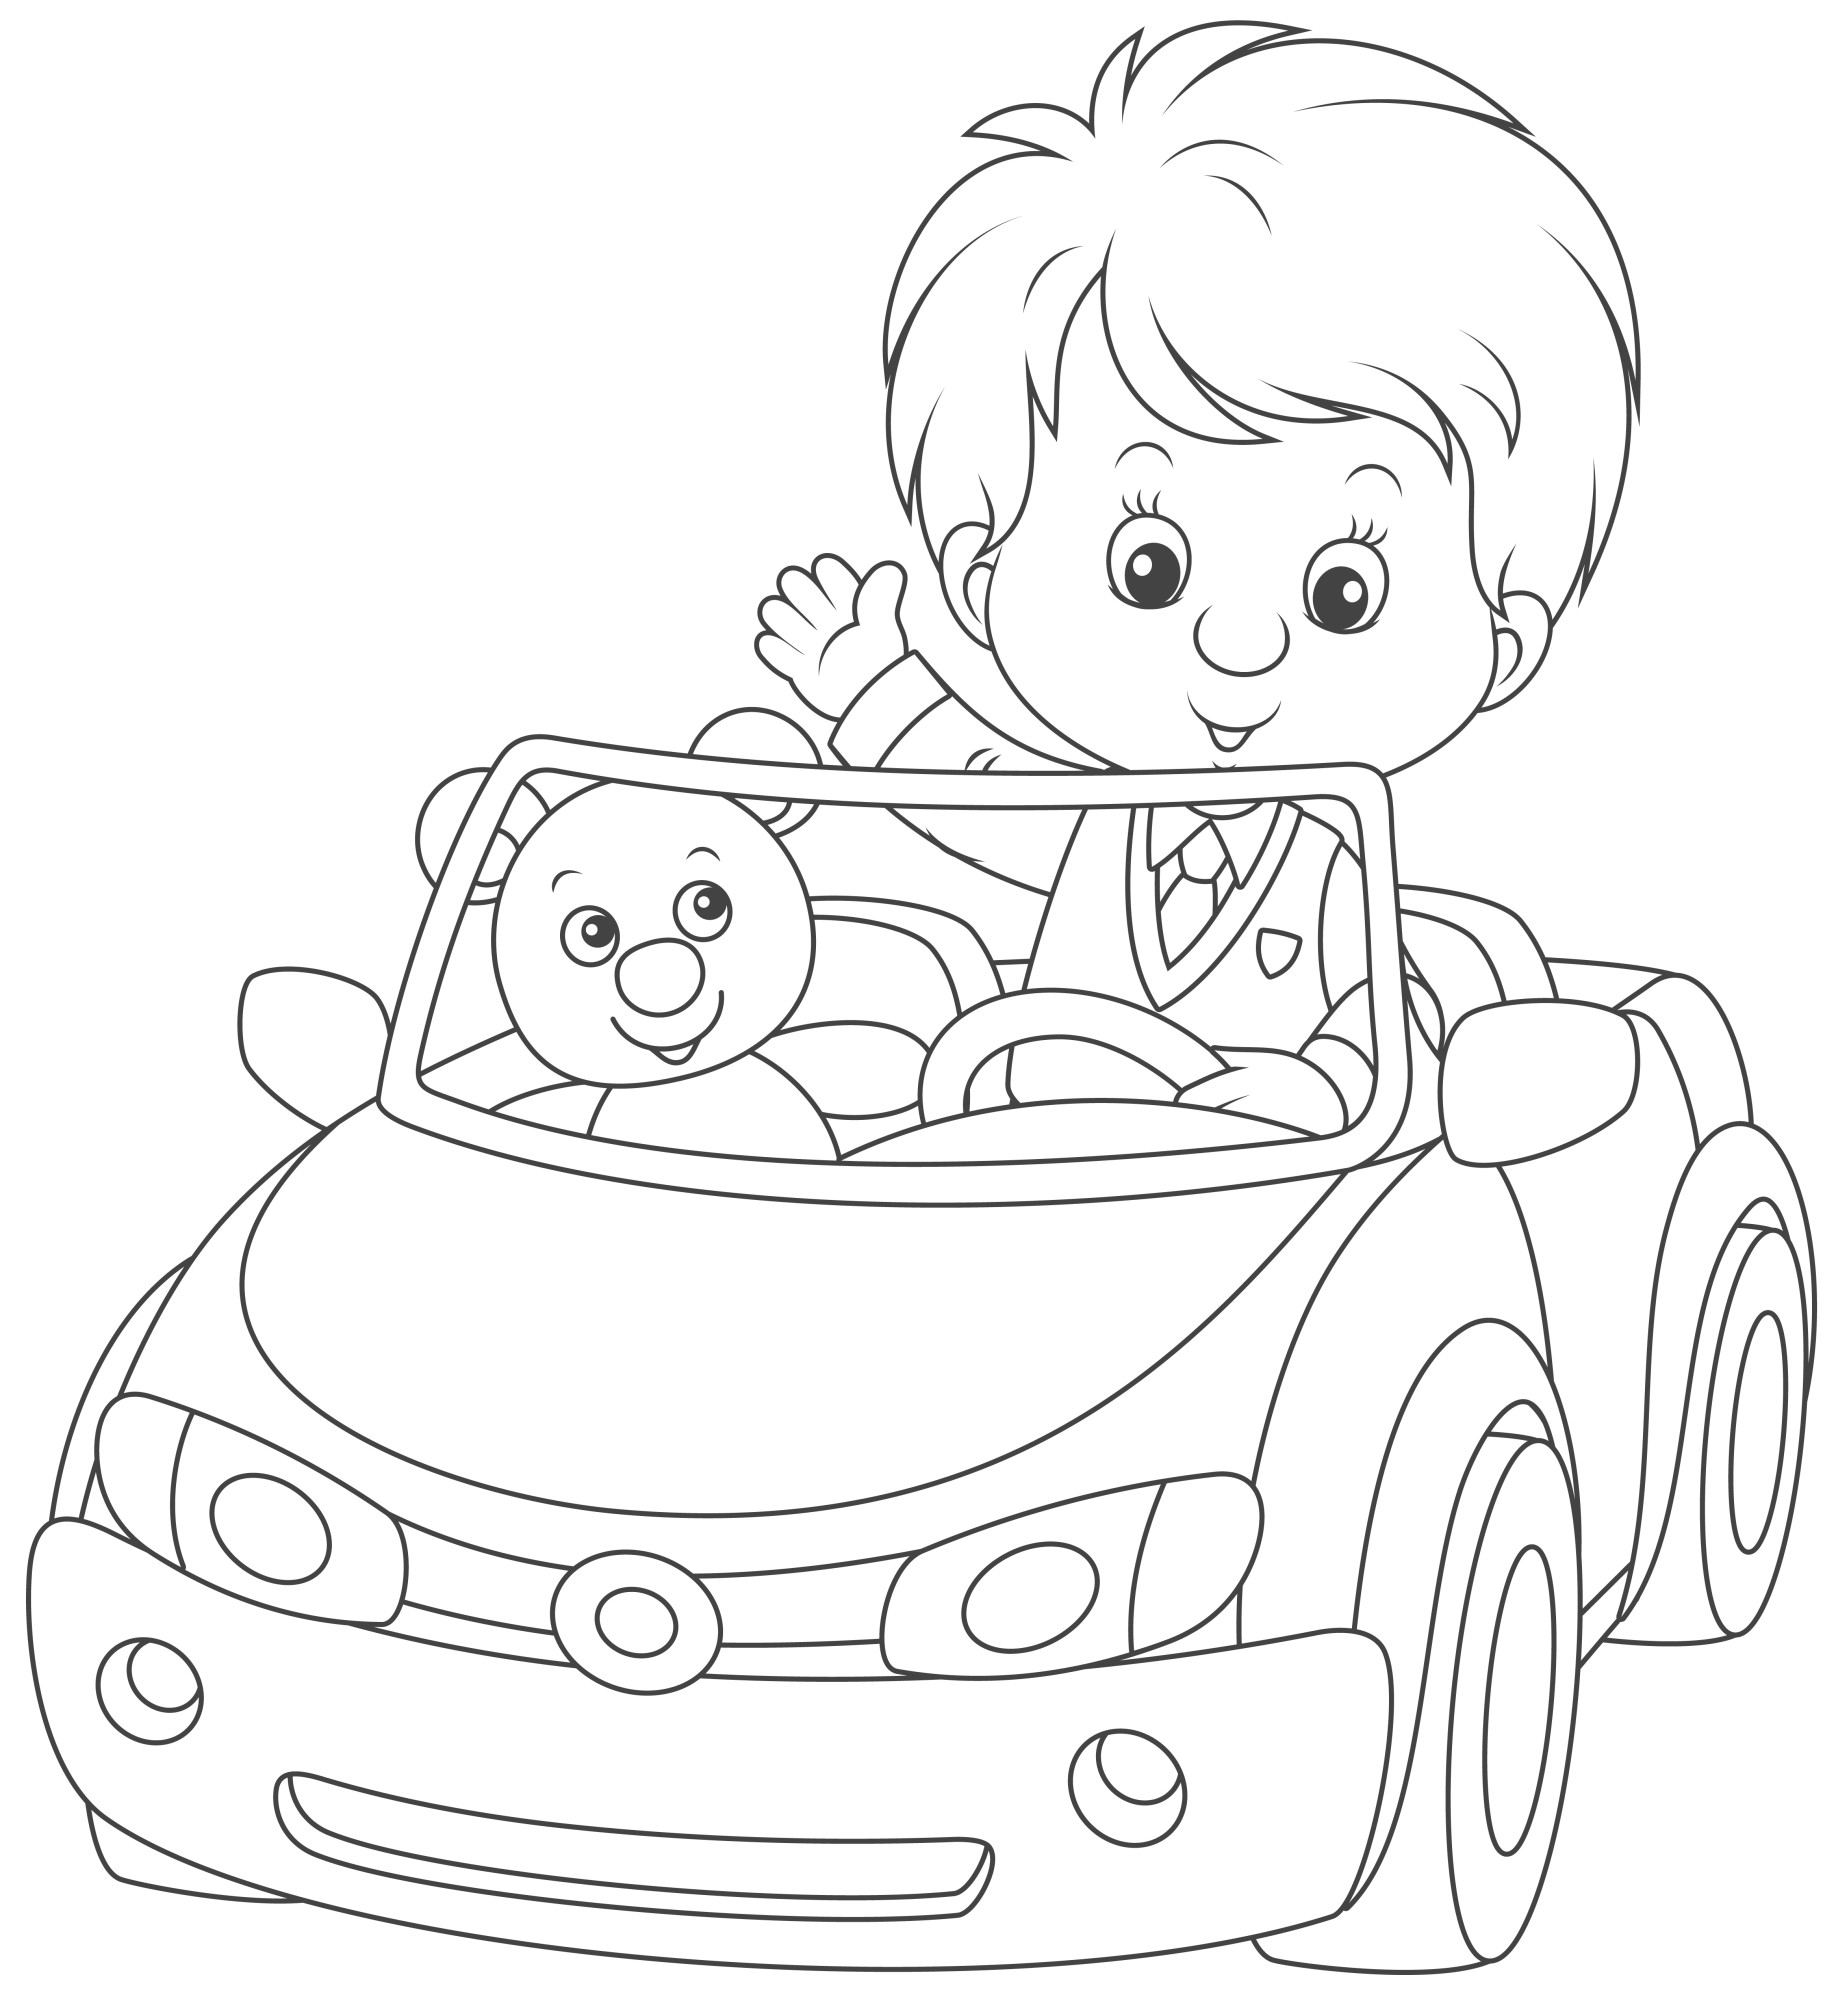 Раскраска для детей: мальчик с игрушкой мишкой на игрушечном автомобиле